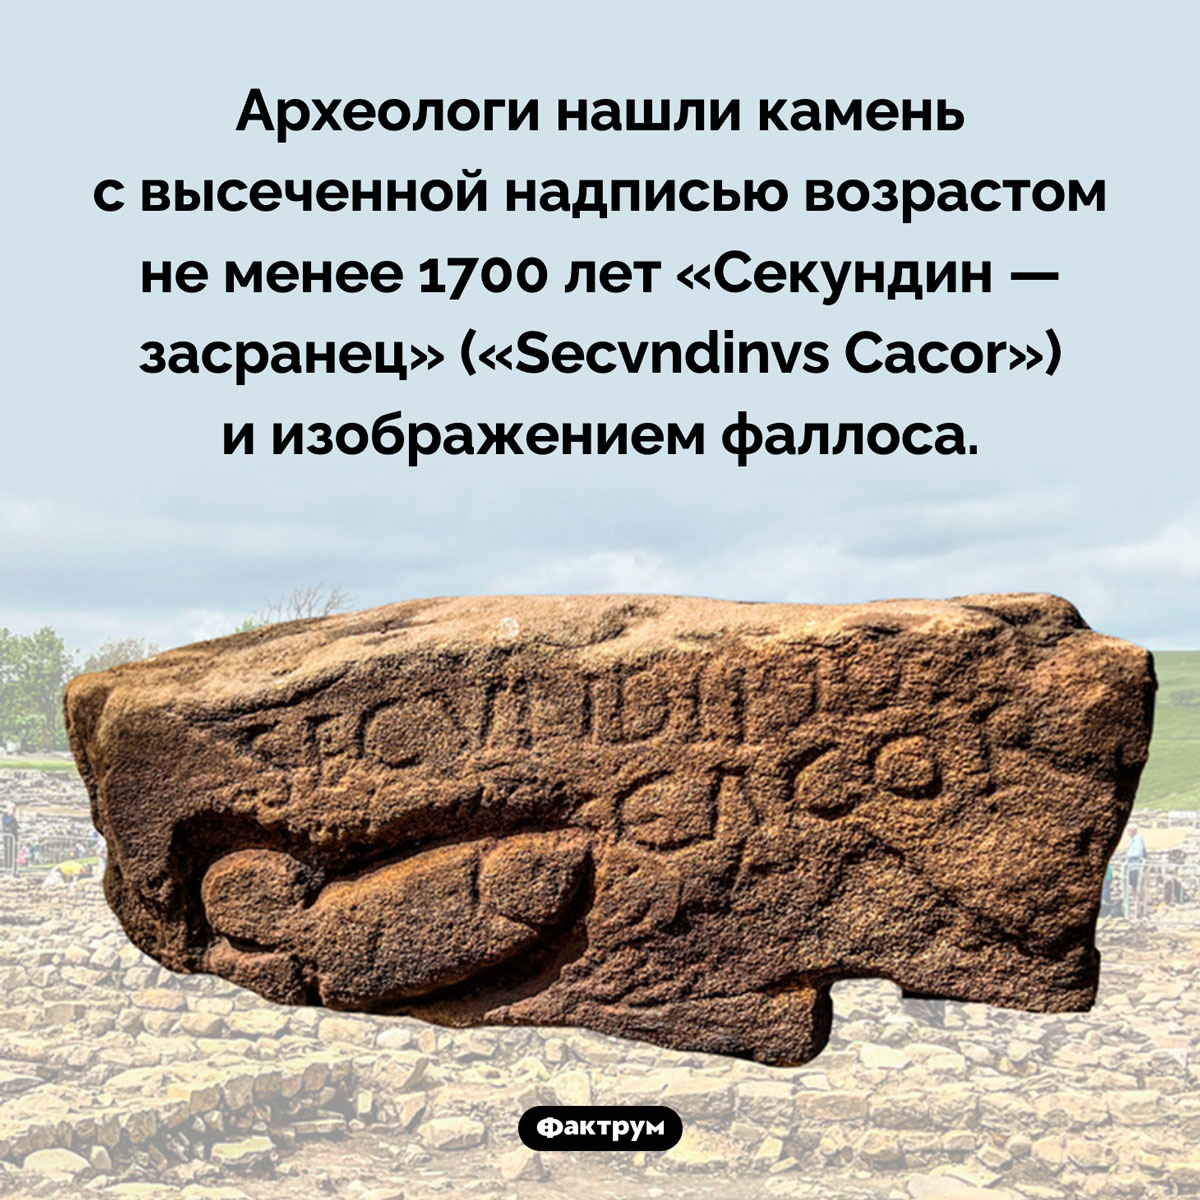 Древнее оскорбление. Археологи нашли камень с высеченной надписью возрастом не менее 1700 лет «Секундин — засранец» («Secvndinvs Cacor») и изображением фаллоса.